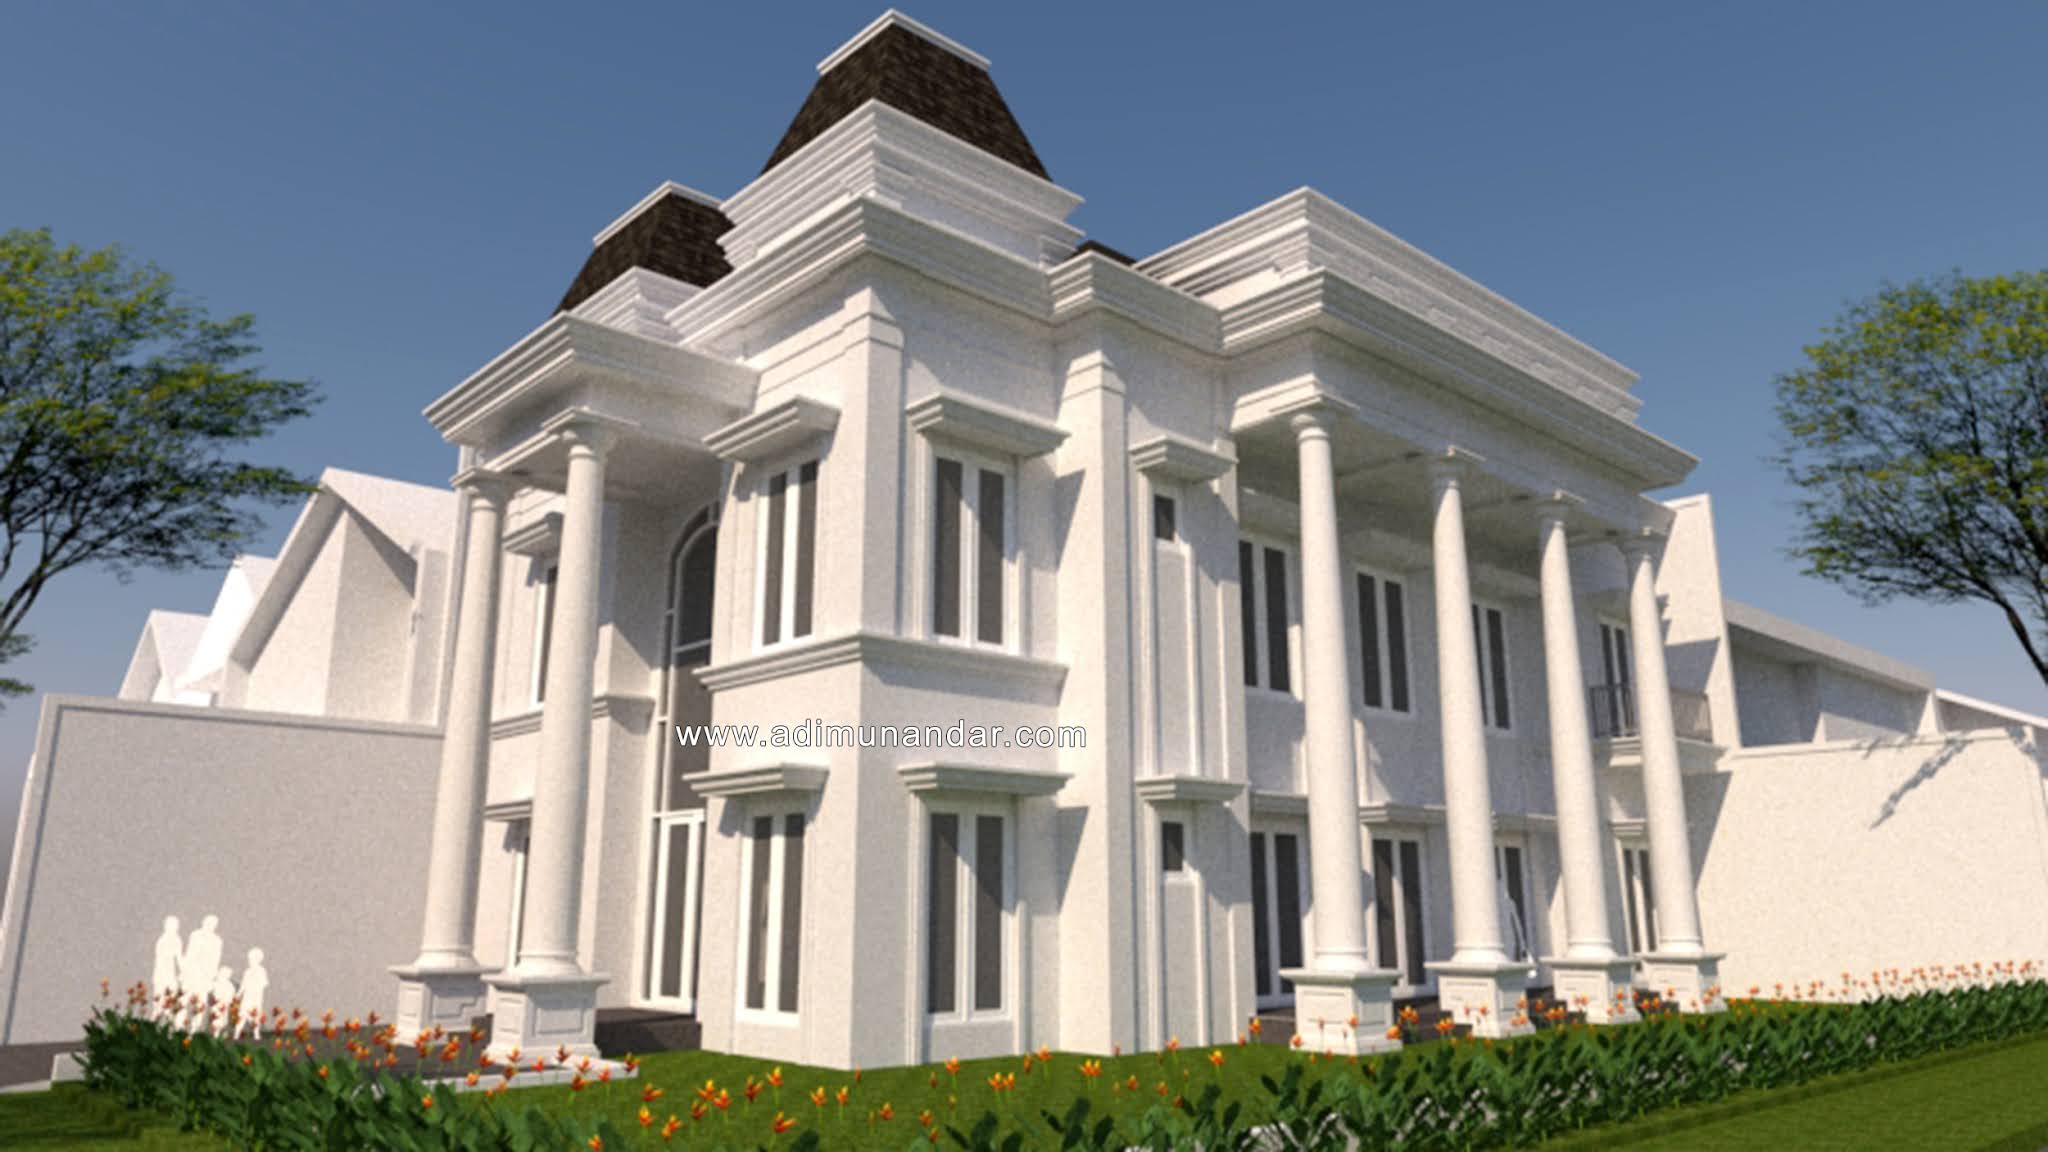 Konsultan Arsitek Jakarta - Desain Arsitektur & Interior: Desain Rumah